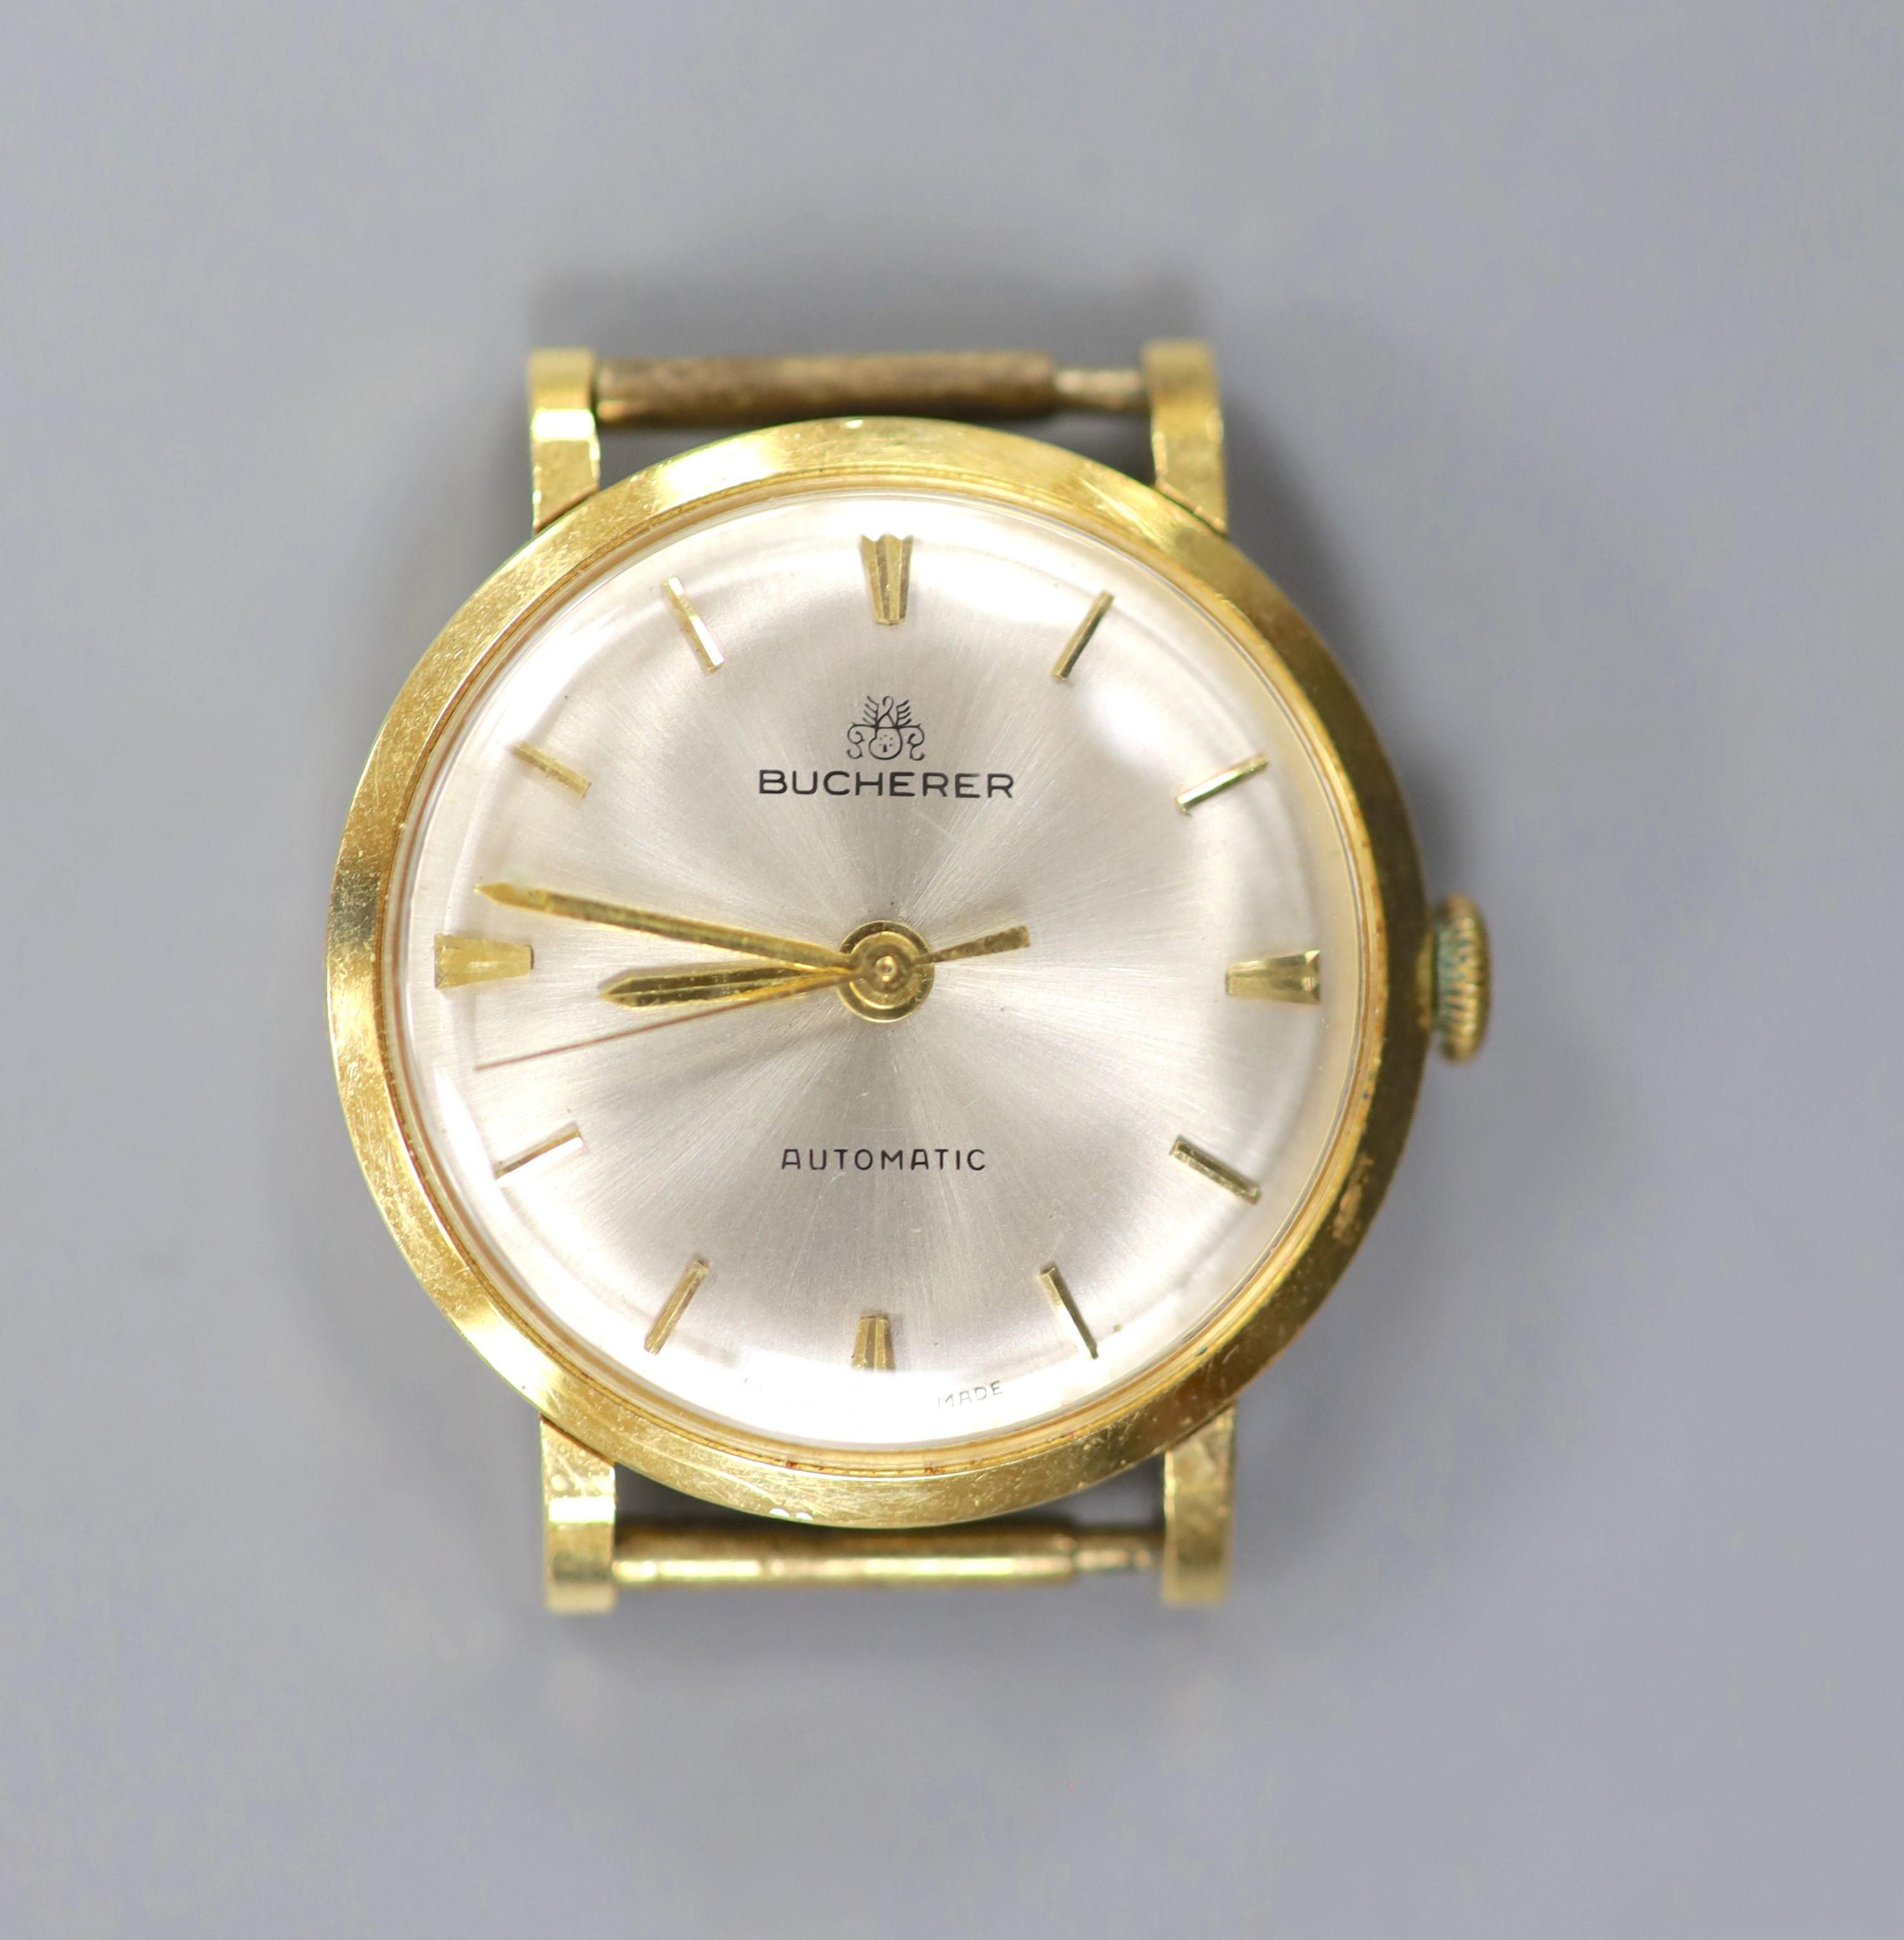 A lady's modern 18k Bucherer automatic wrist watch, no strap, case diameter 26mm, gross weight 16.4 grams.